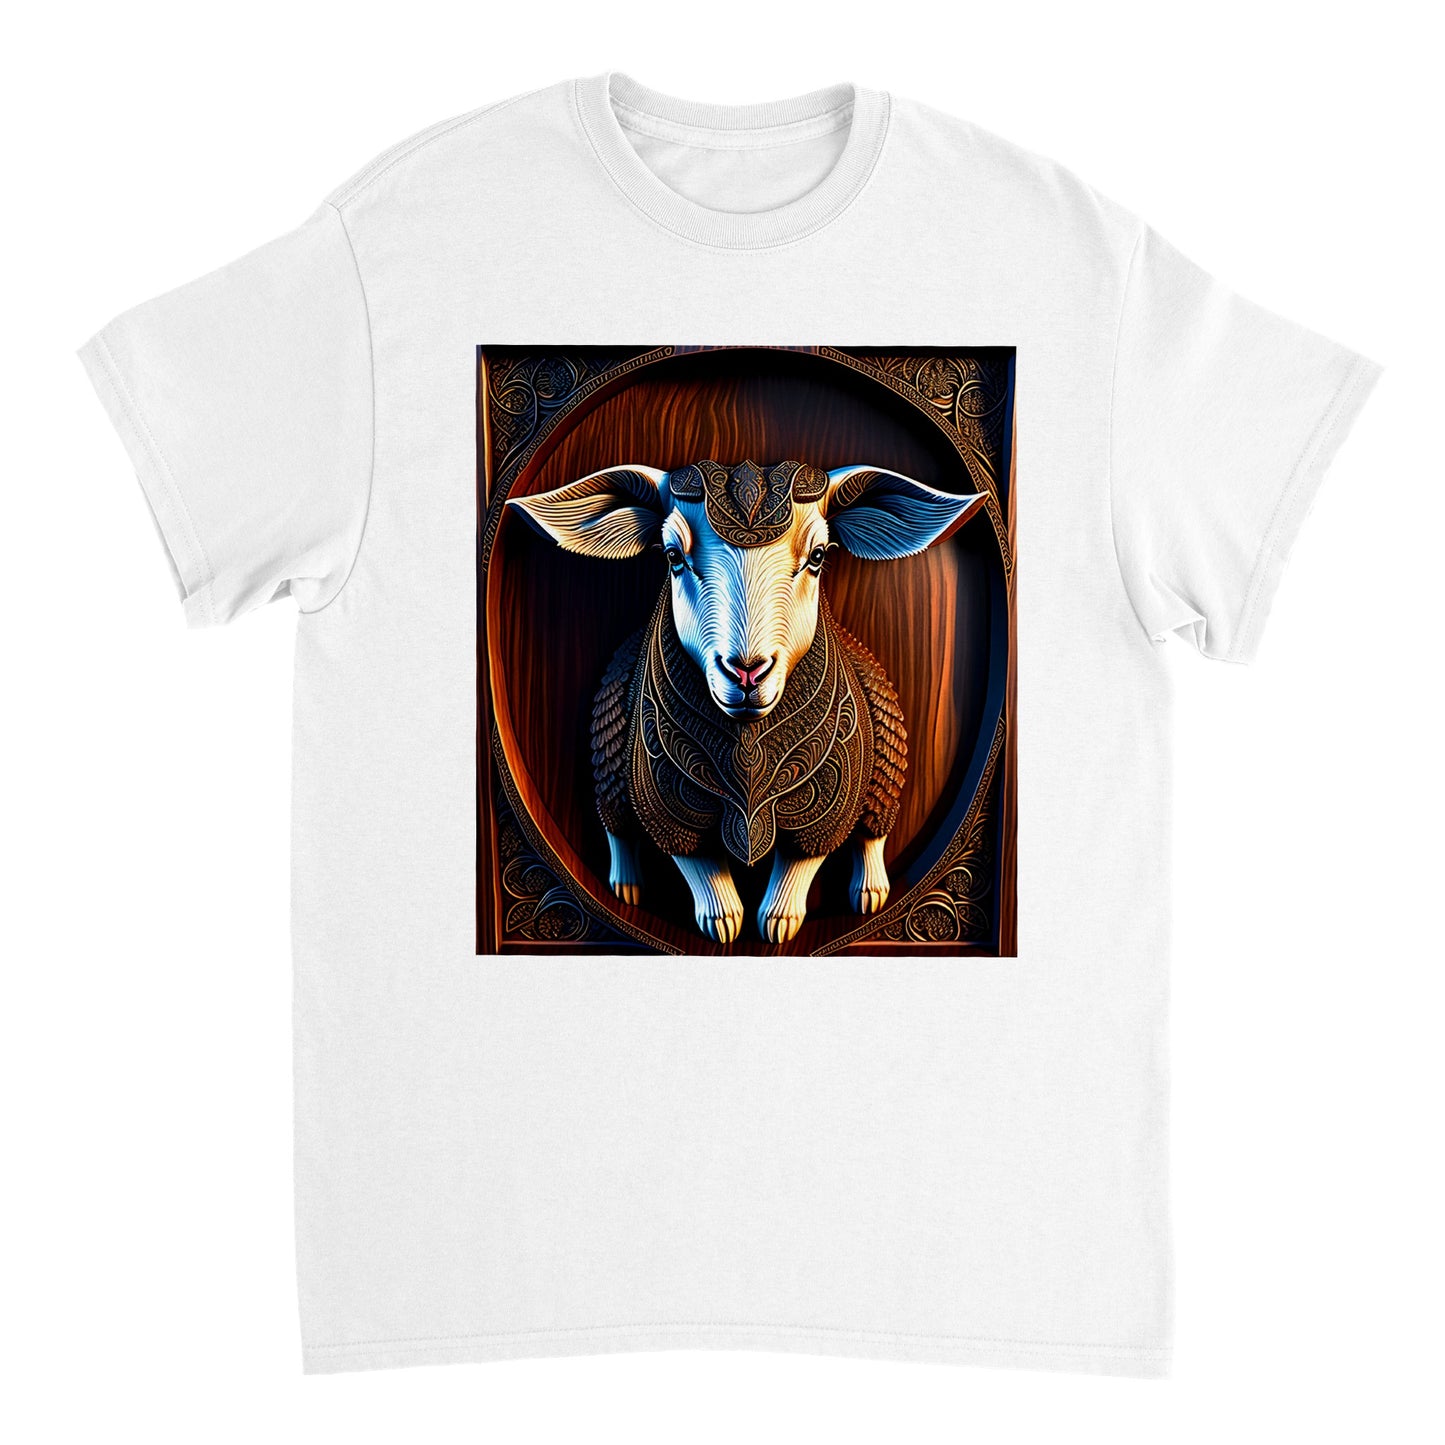 3D Wooden Animal Art - Heavyweight Unisex Crewneck T-shirt 79